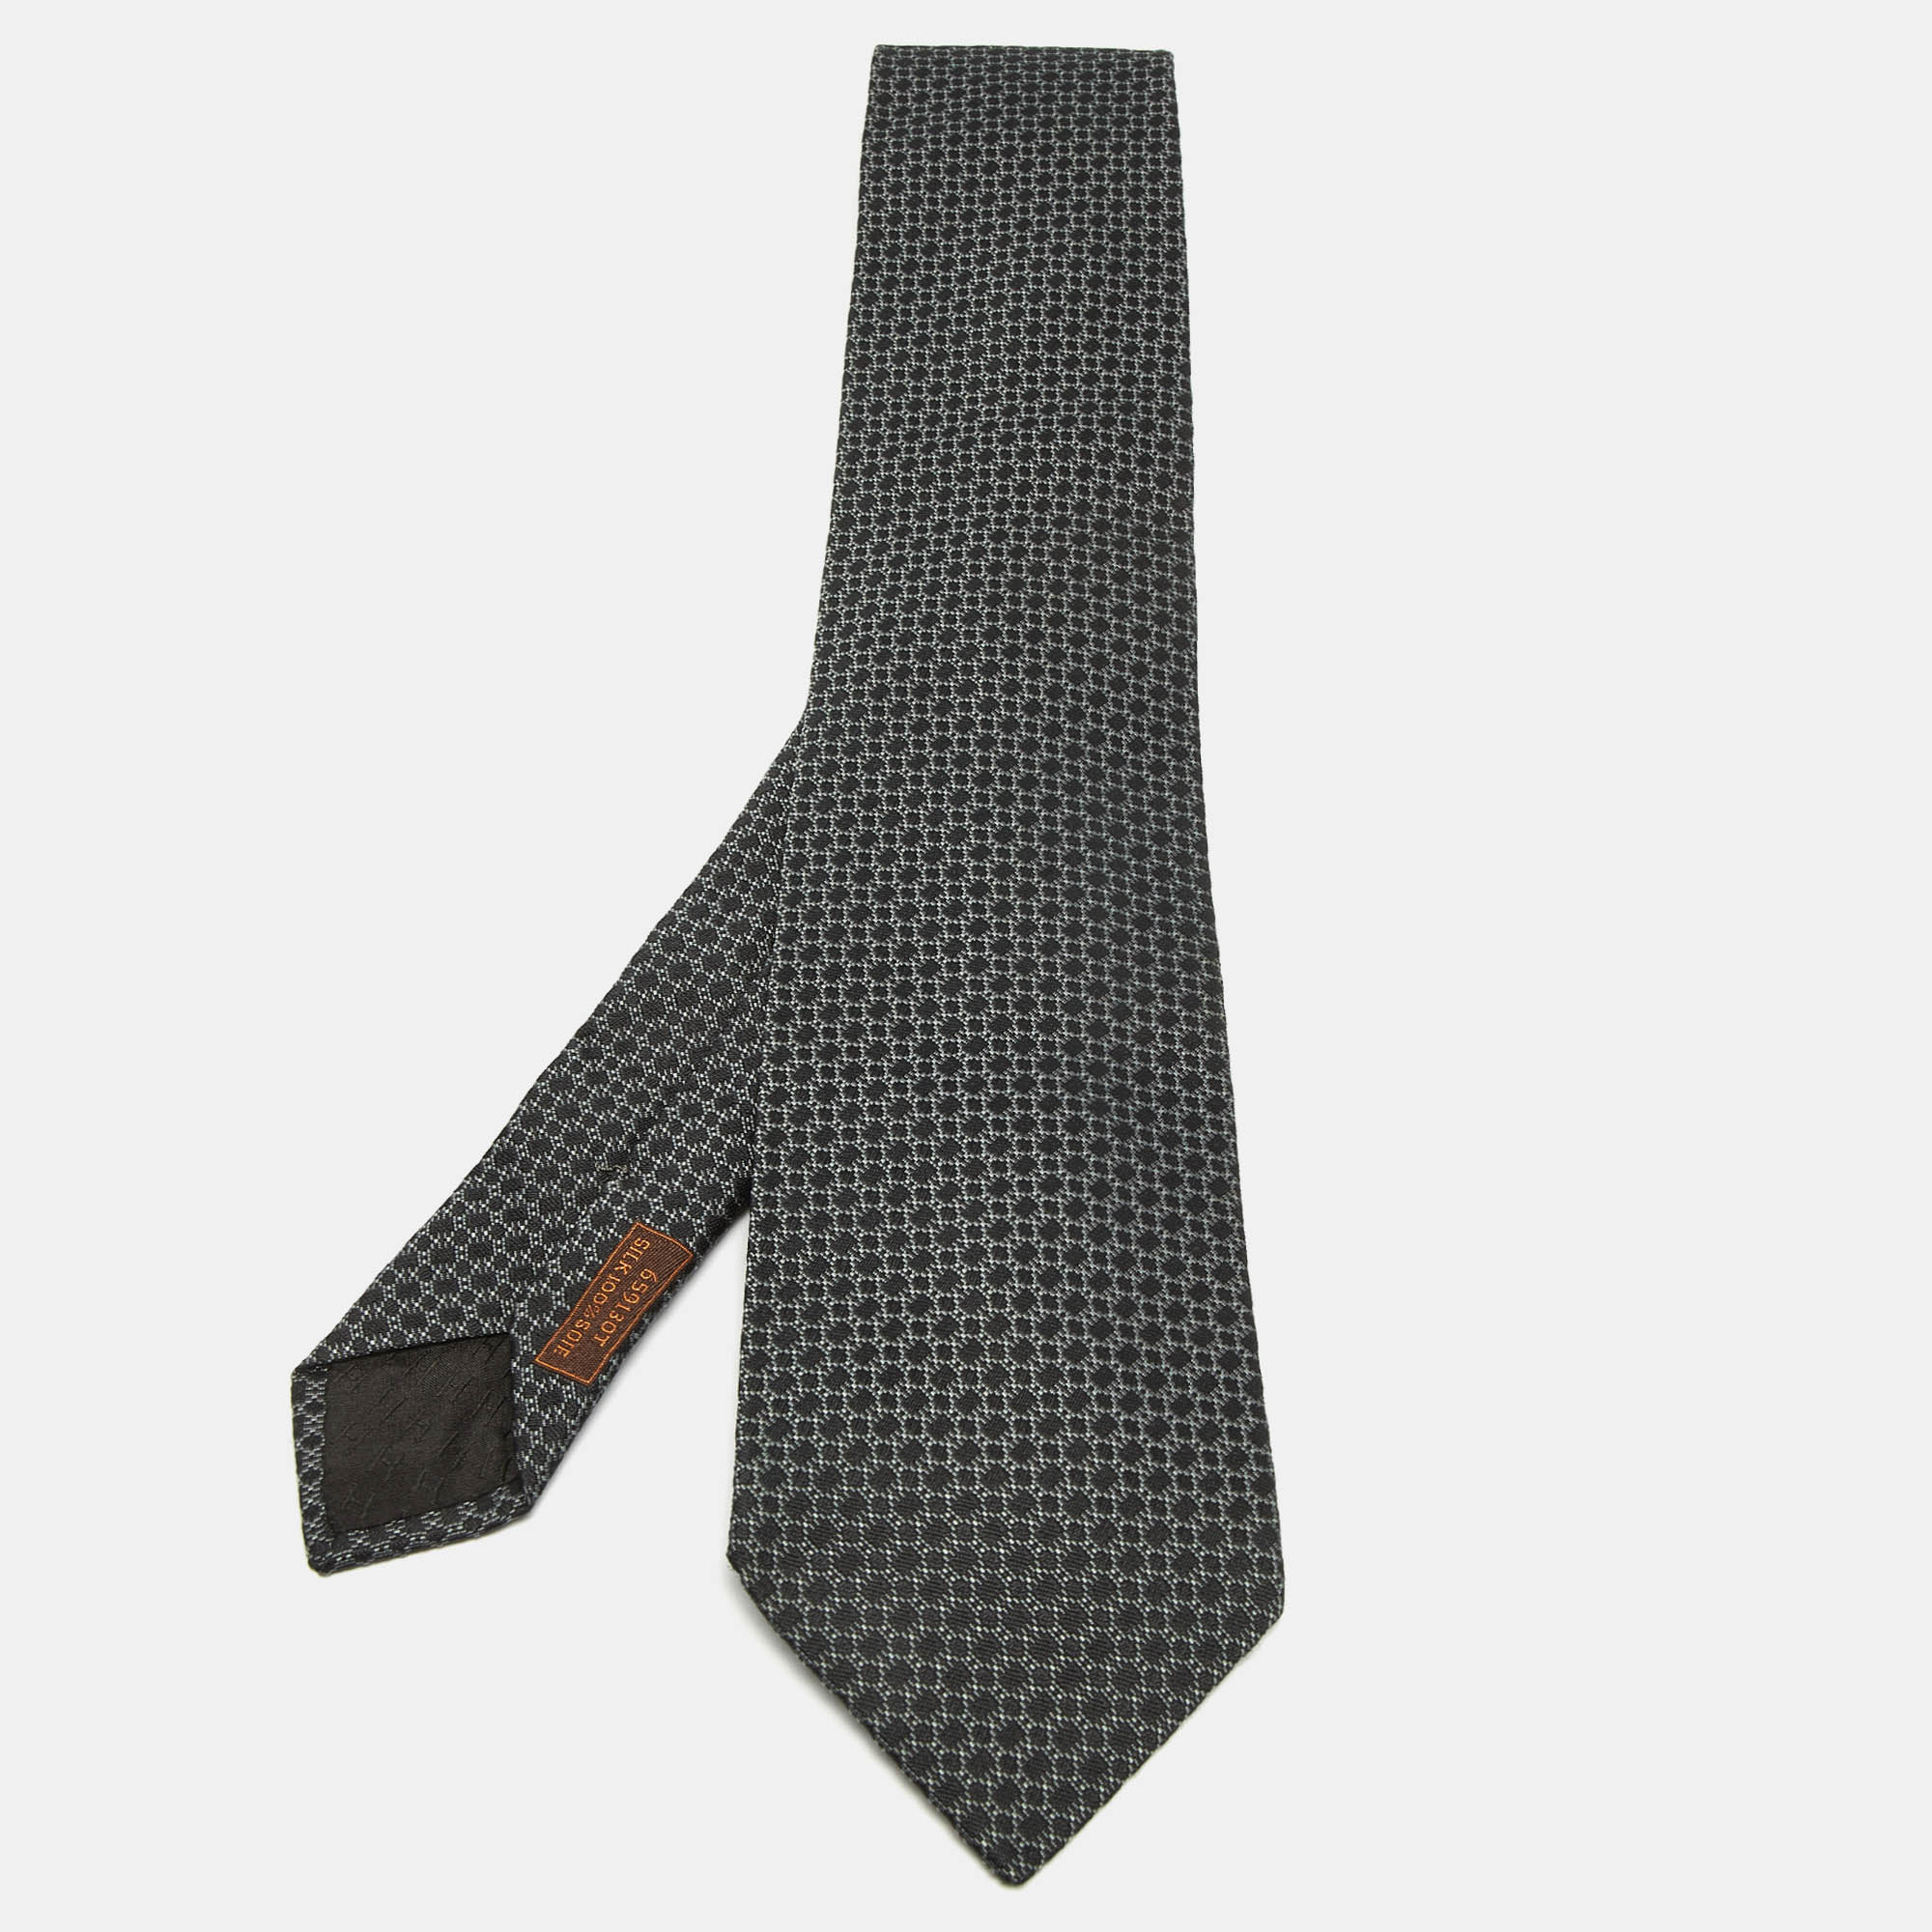 Hermes grey patterned silk tie